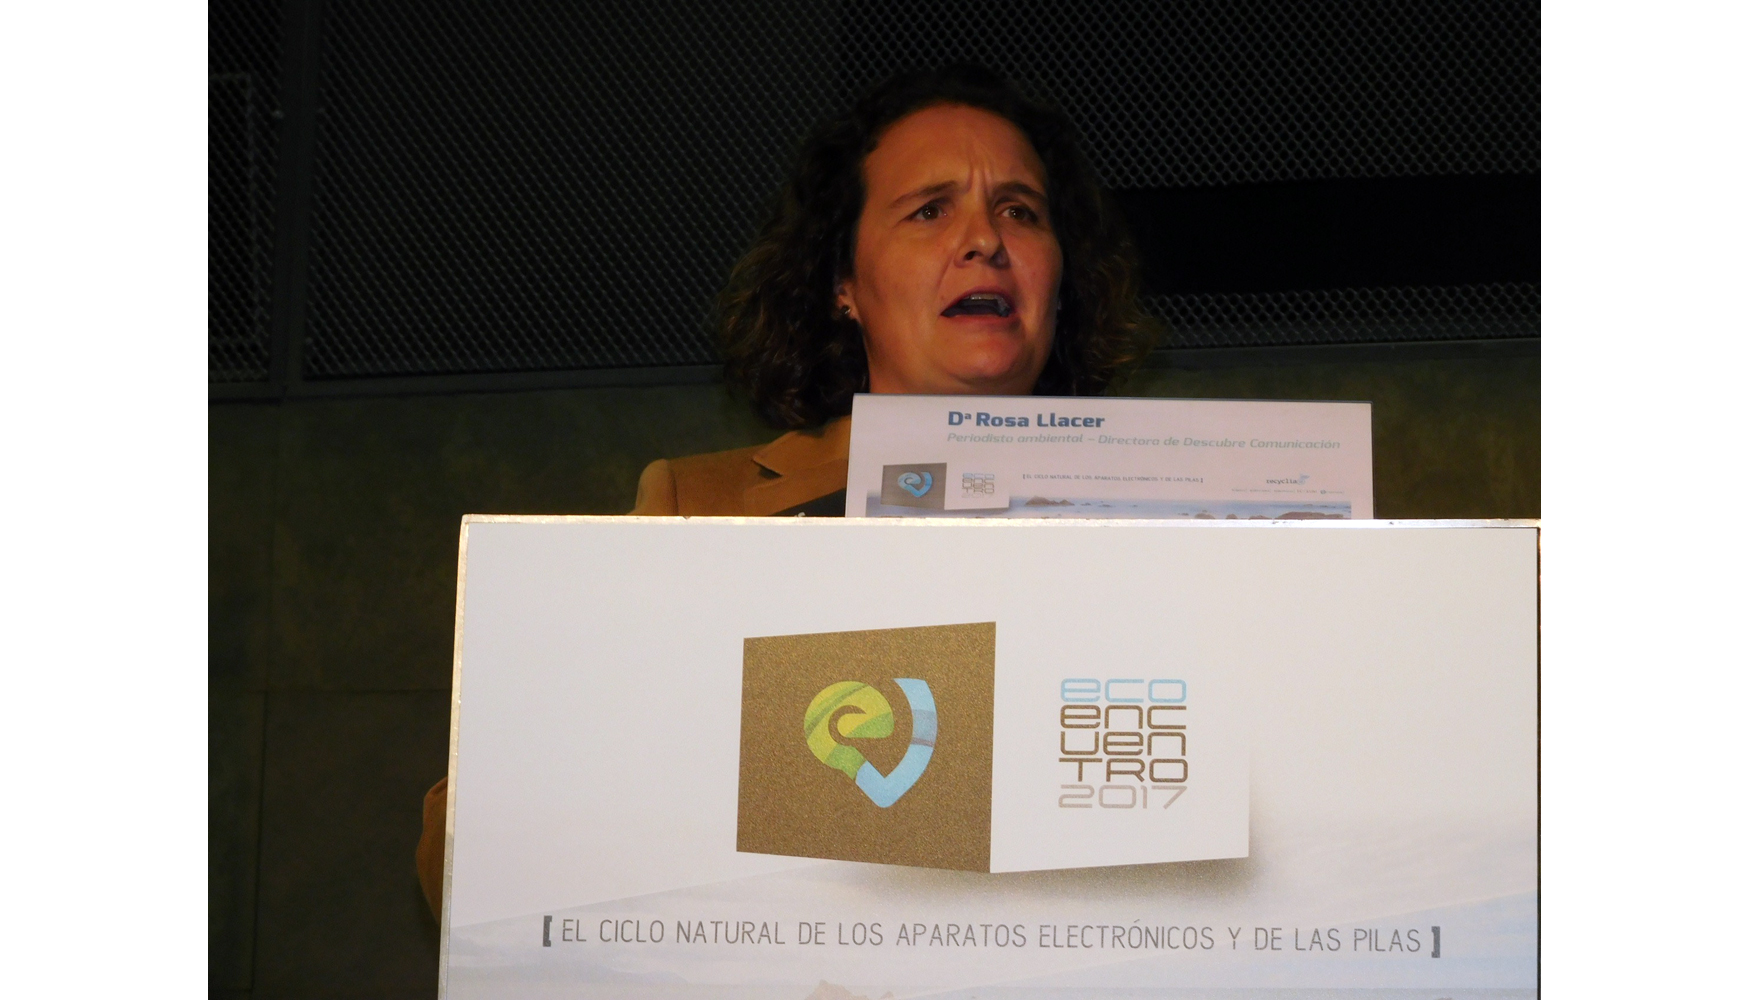 Intervencin de Rosa Llacer, directora de Descubre Comunicacin y periodista ambiental